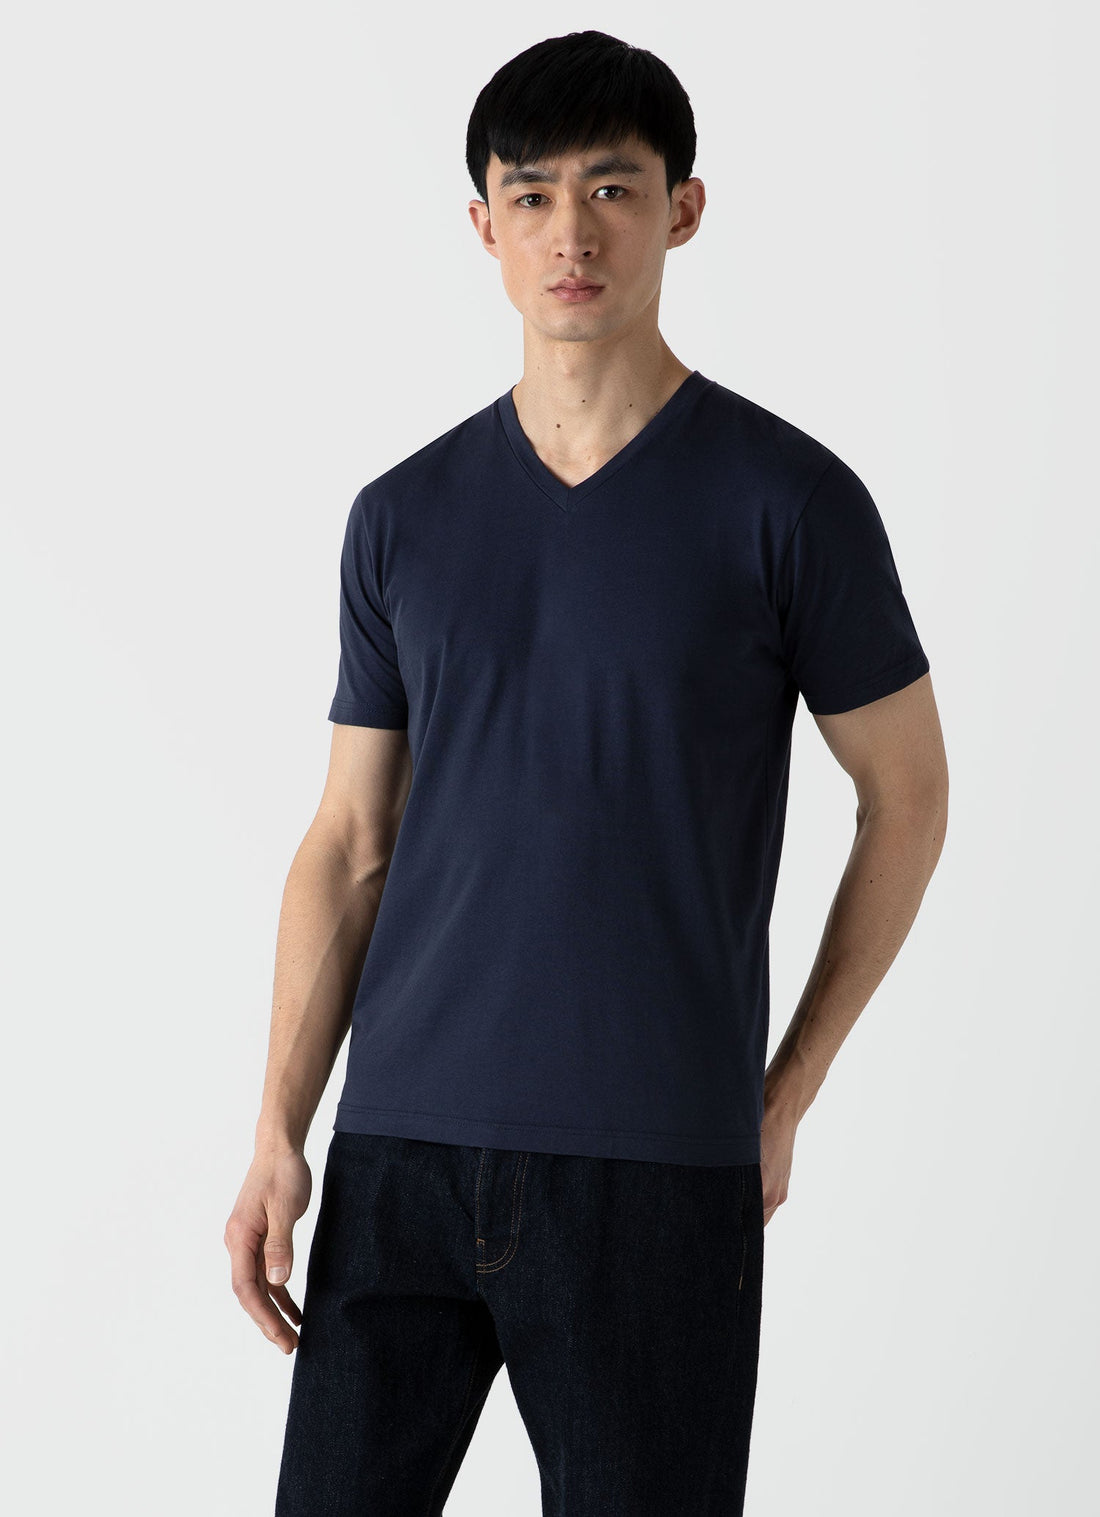 Men's Riviera V-neck T-shirt in Navy